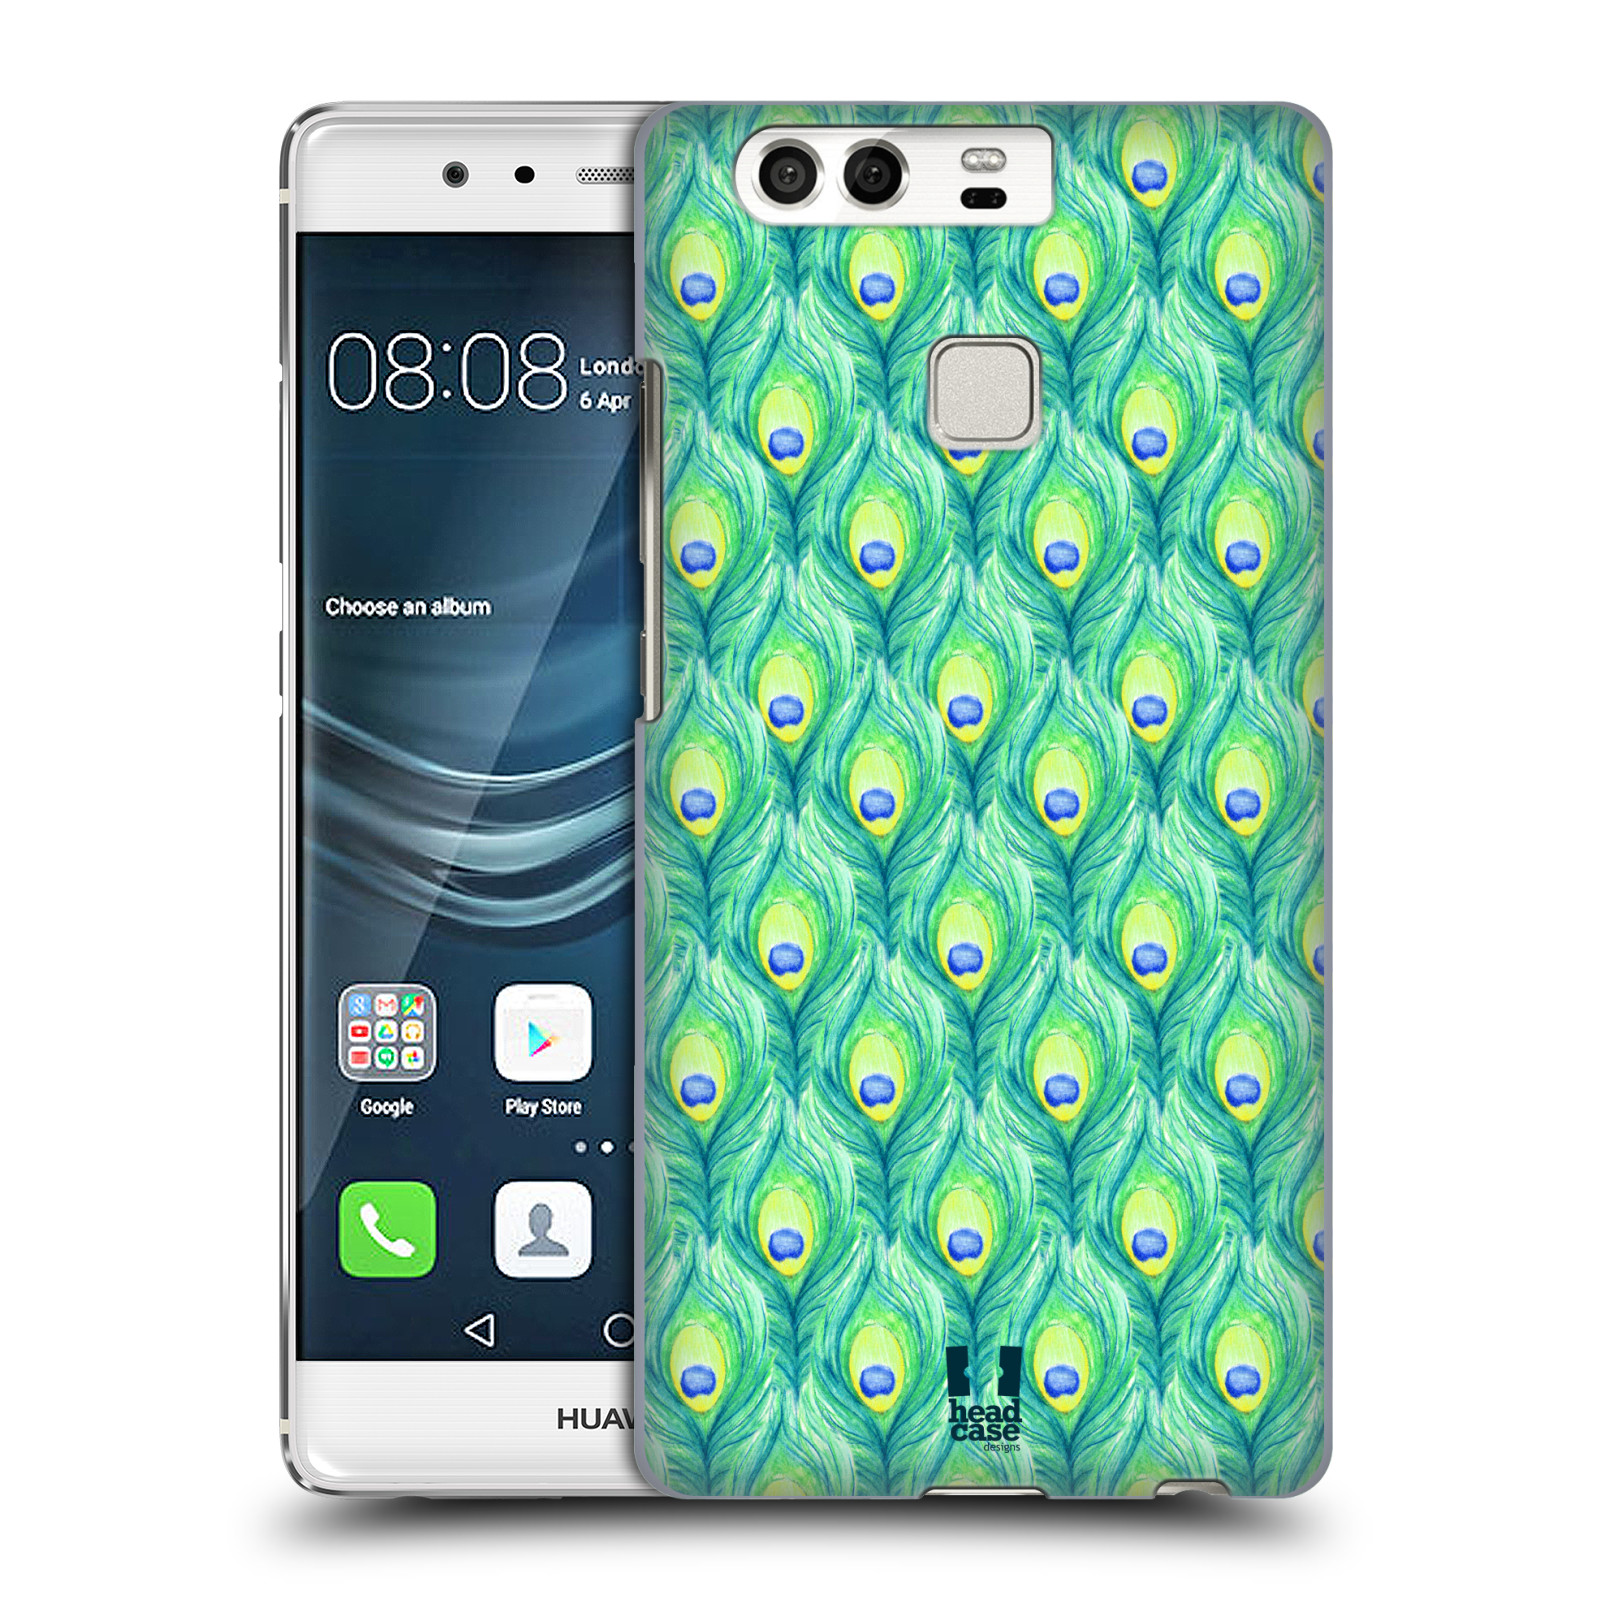 HEAD CASE plastový obal na mobil Huawei P9 / P9 DUAL SIM vzor Paví pírka barevná ZELENÁ